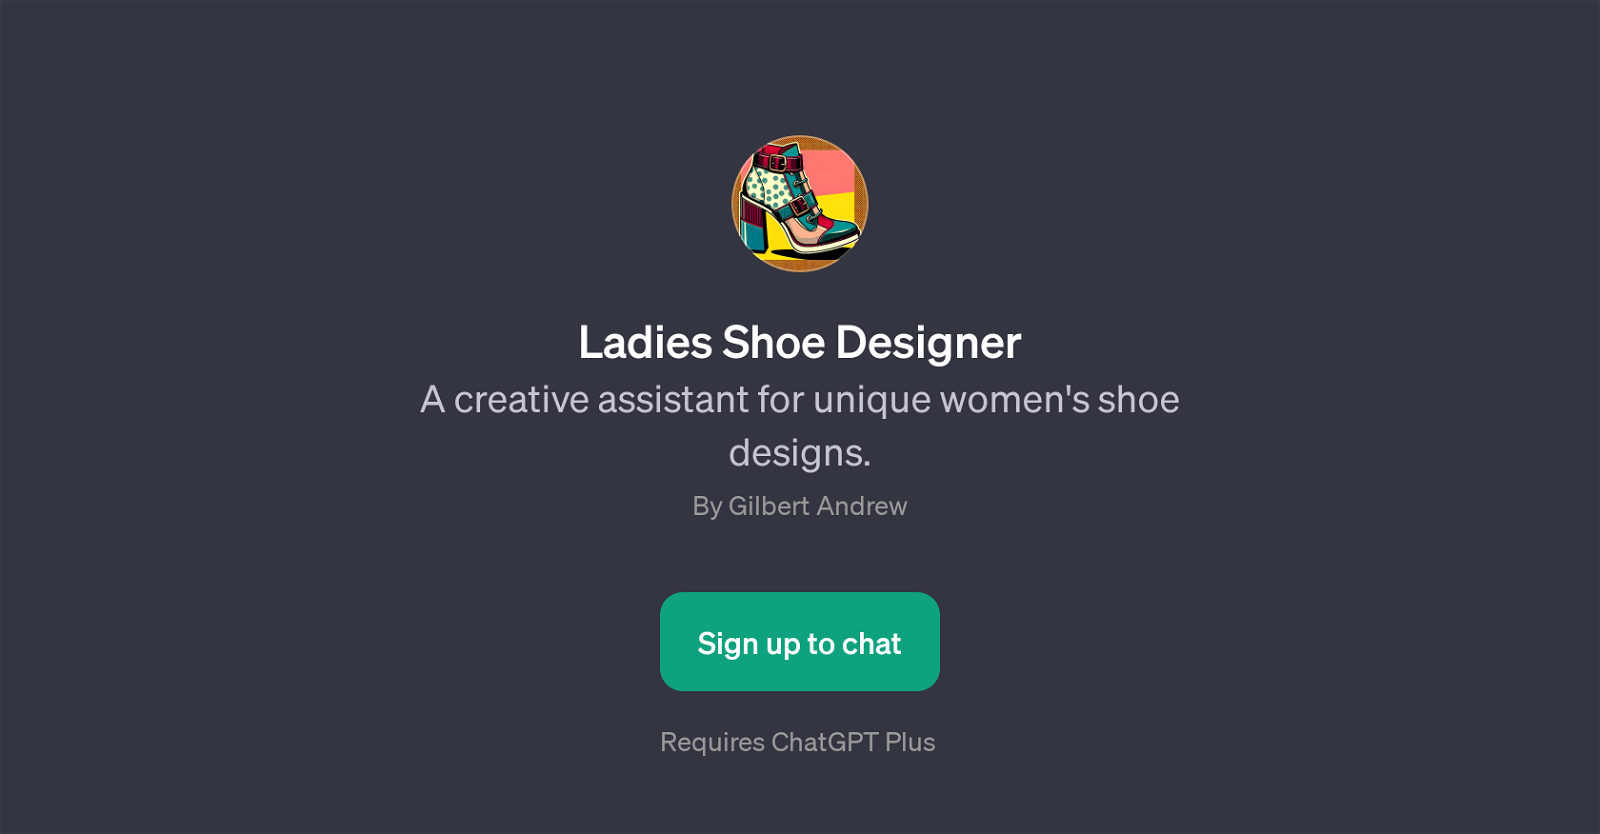 Ladies Shoe Designer website